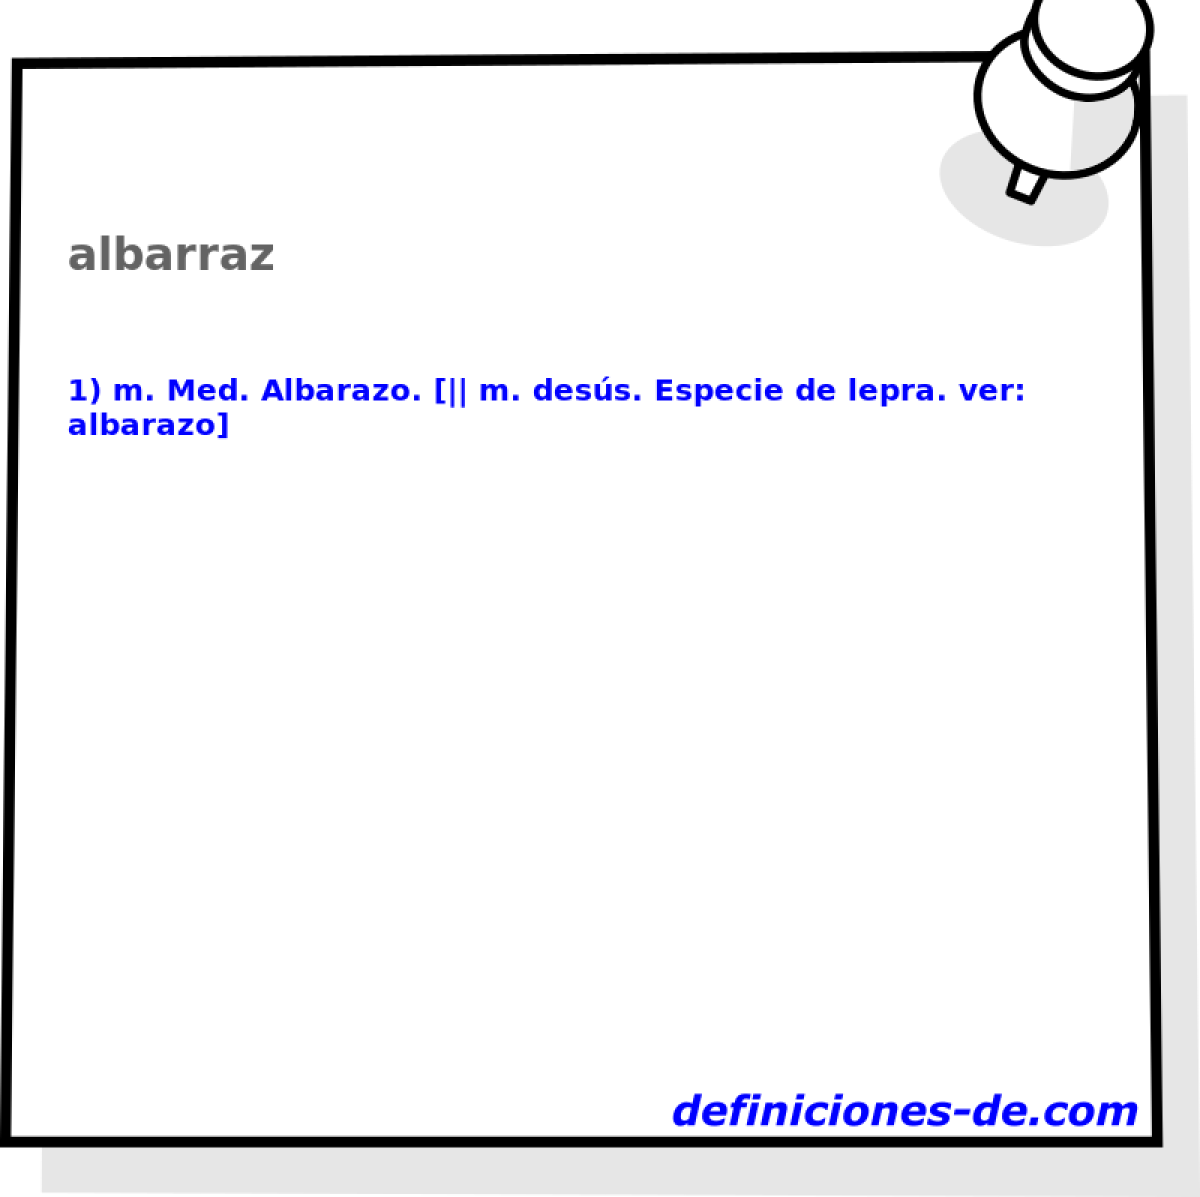 albarraz 